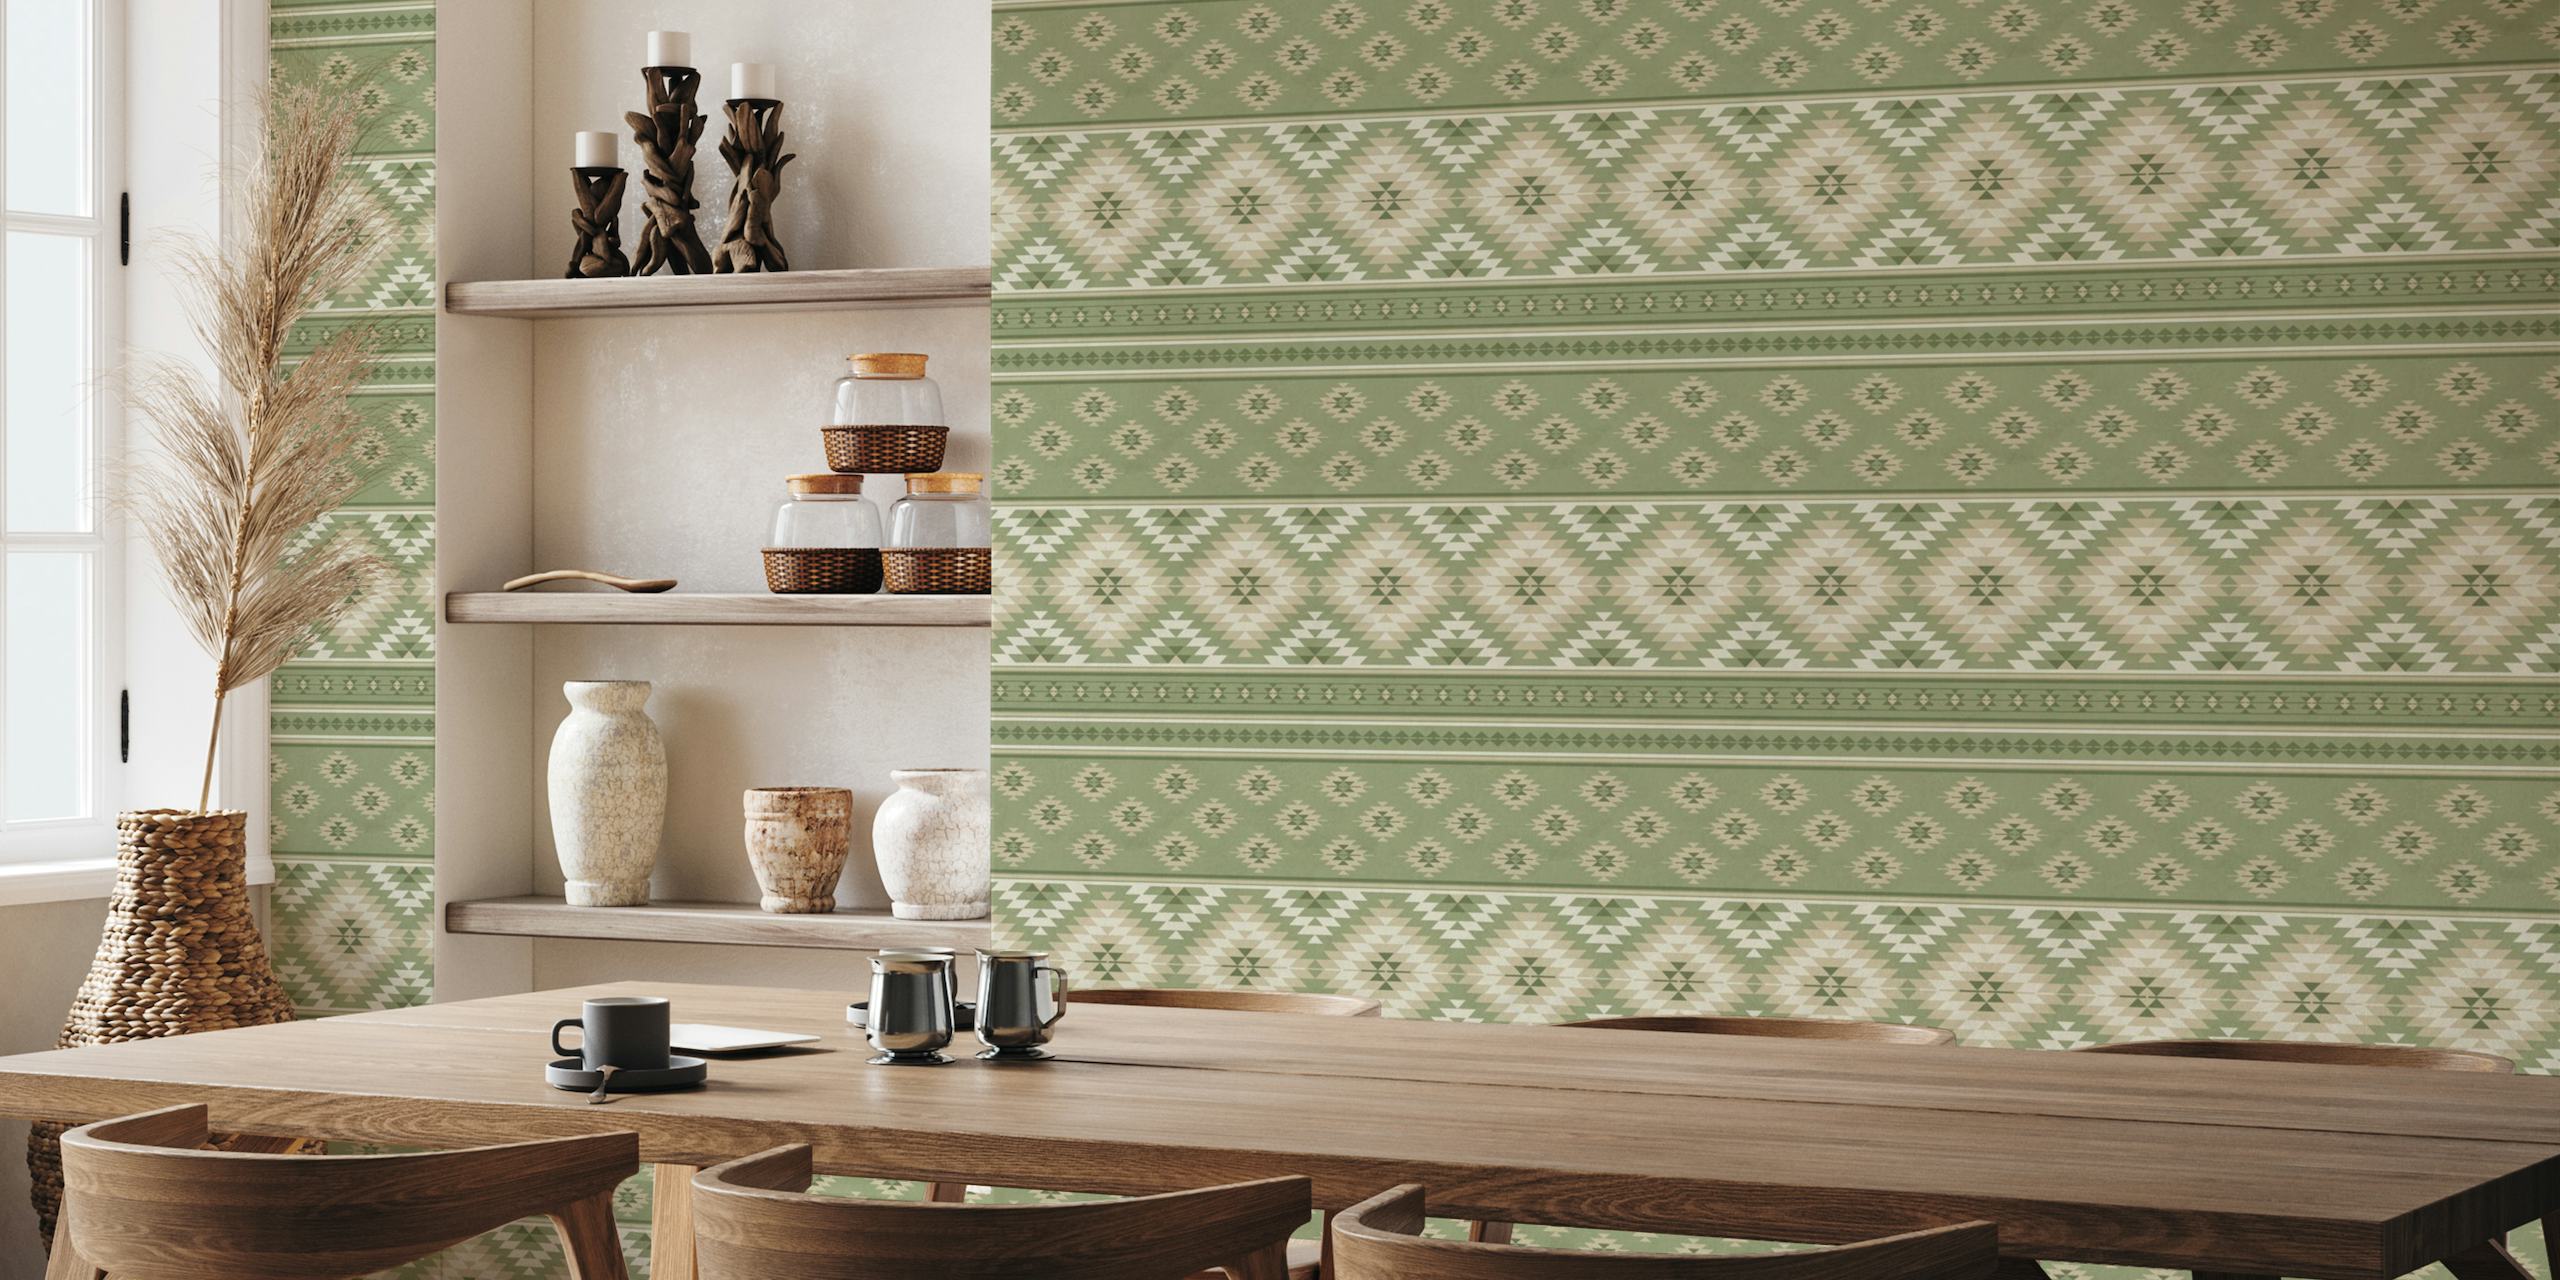 Kilim Stripes seinämaalaus oliivisalviavihreänä ja beigenä geometrisilla kuvioilla